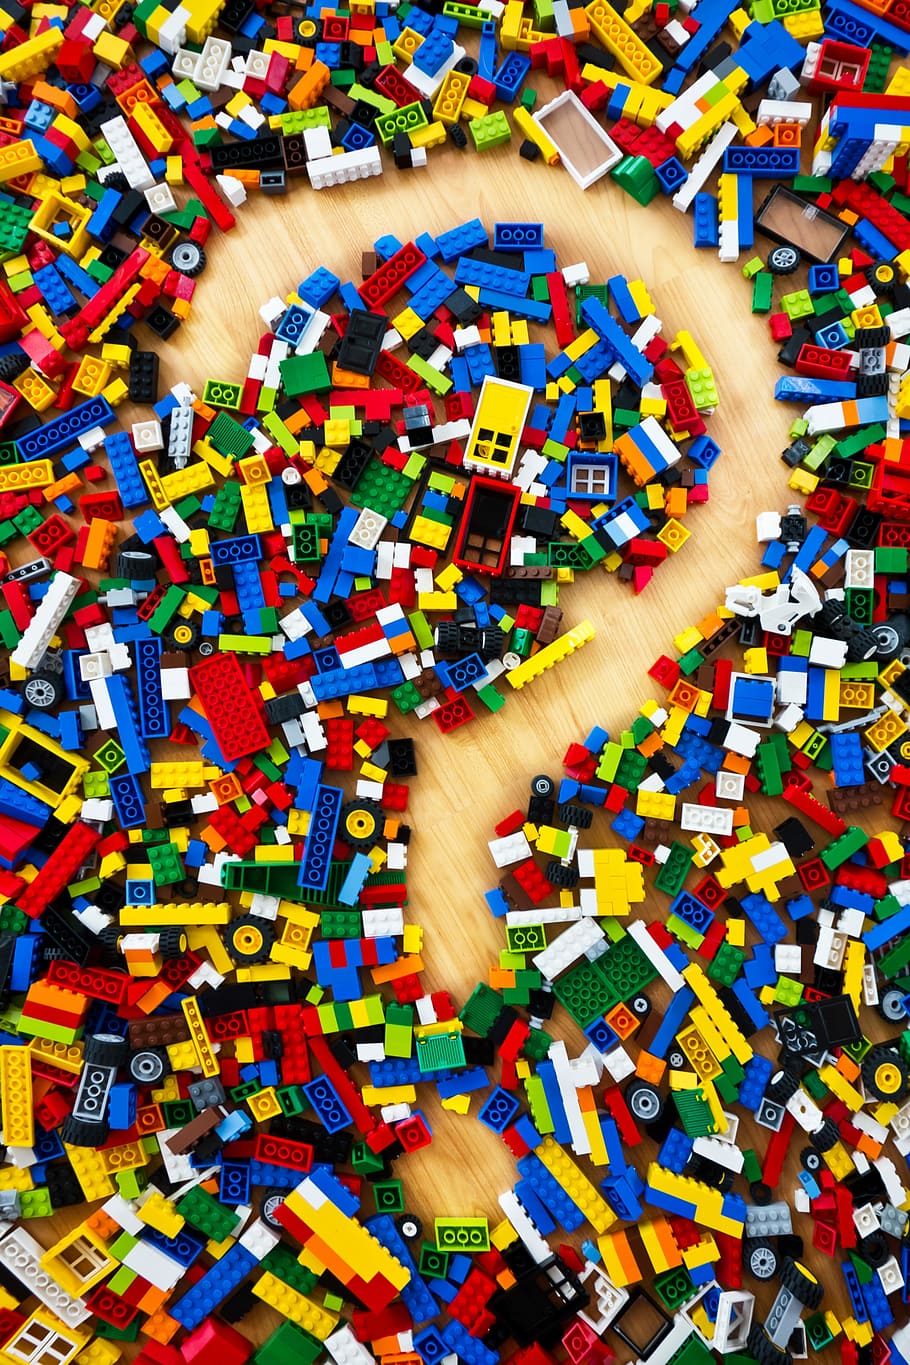 interlocking, blocks, formed, question mark, lego, lego blocks, legosammlung, play, search game, building blocks